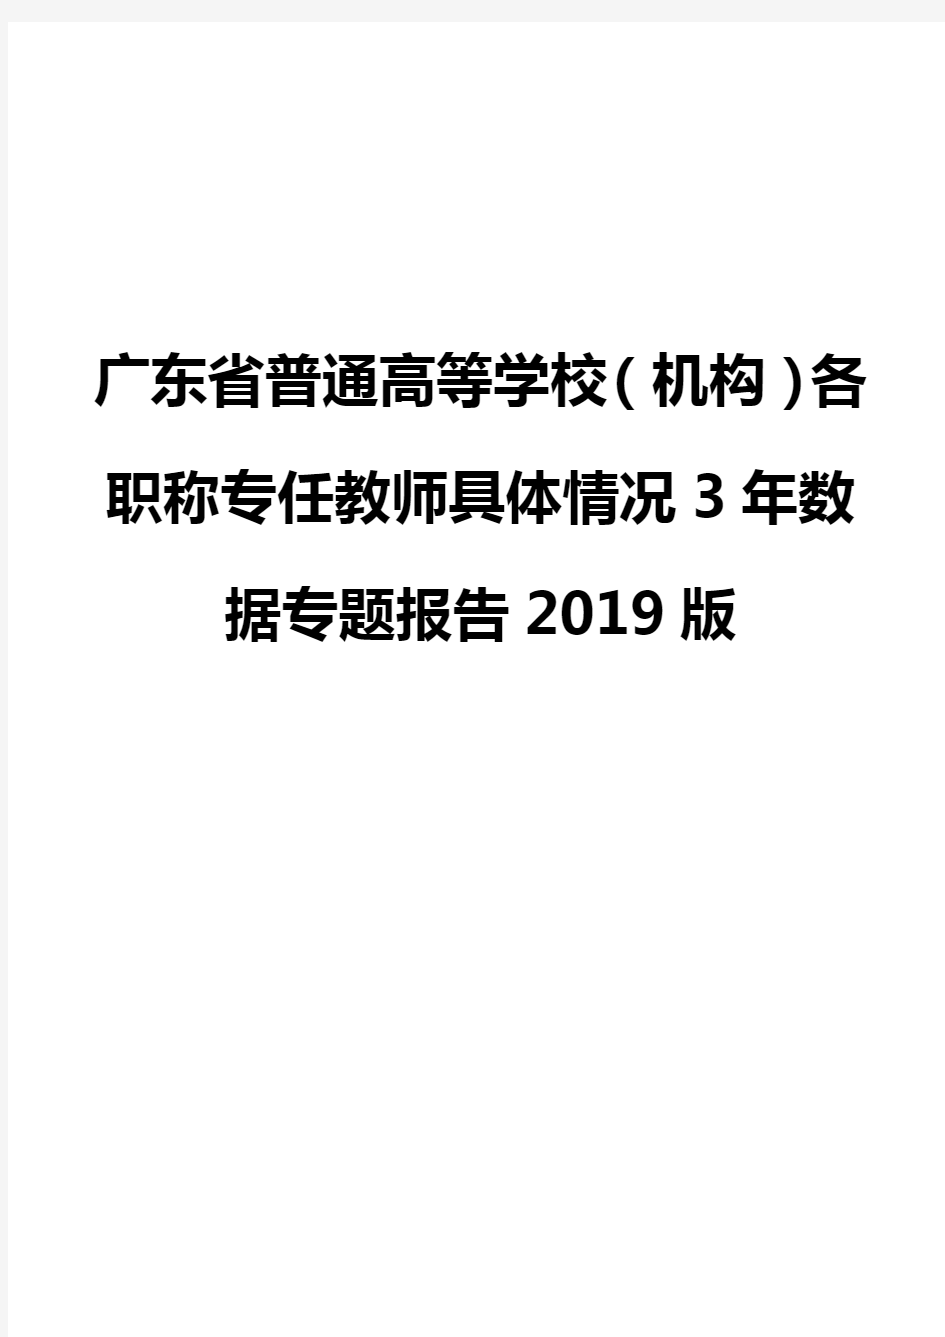 广东省普通高等学校(机构)各职称专任教师具体情况3年数据专题报告2019版